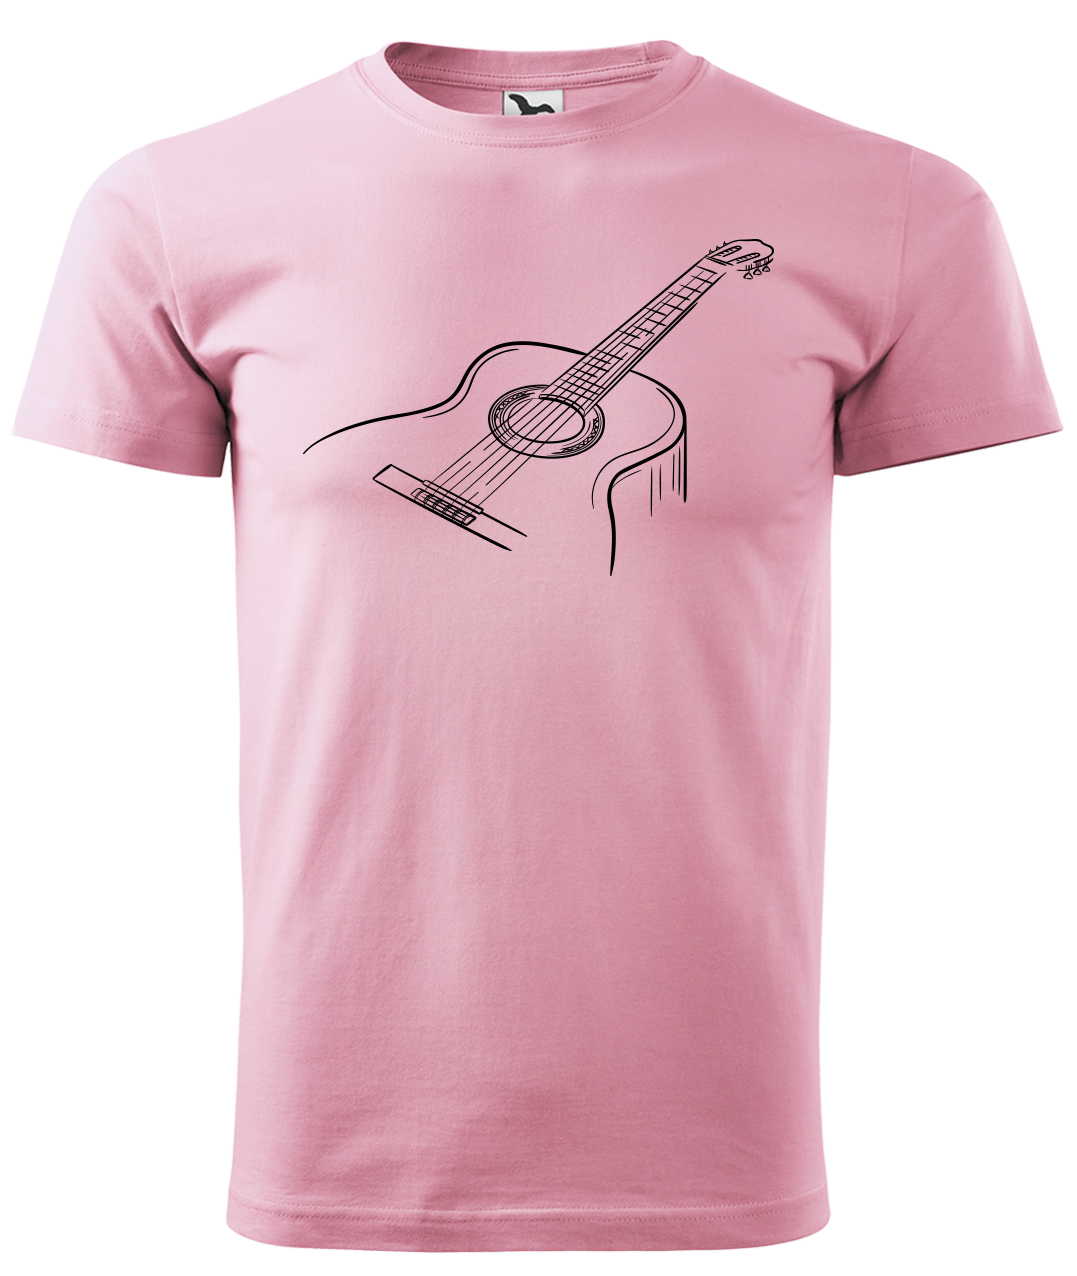 Dětské tričko s kytarou - Klasická kytara Velikost: 4 roky / 110 cm, Barva: Růžová (30)